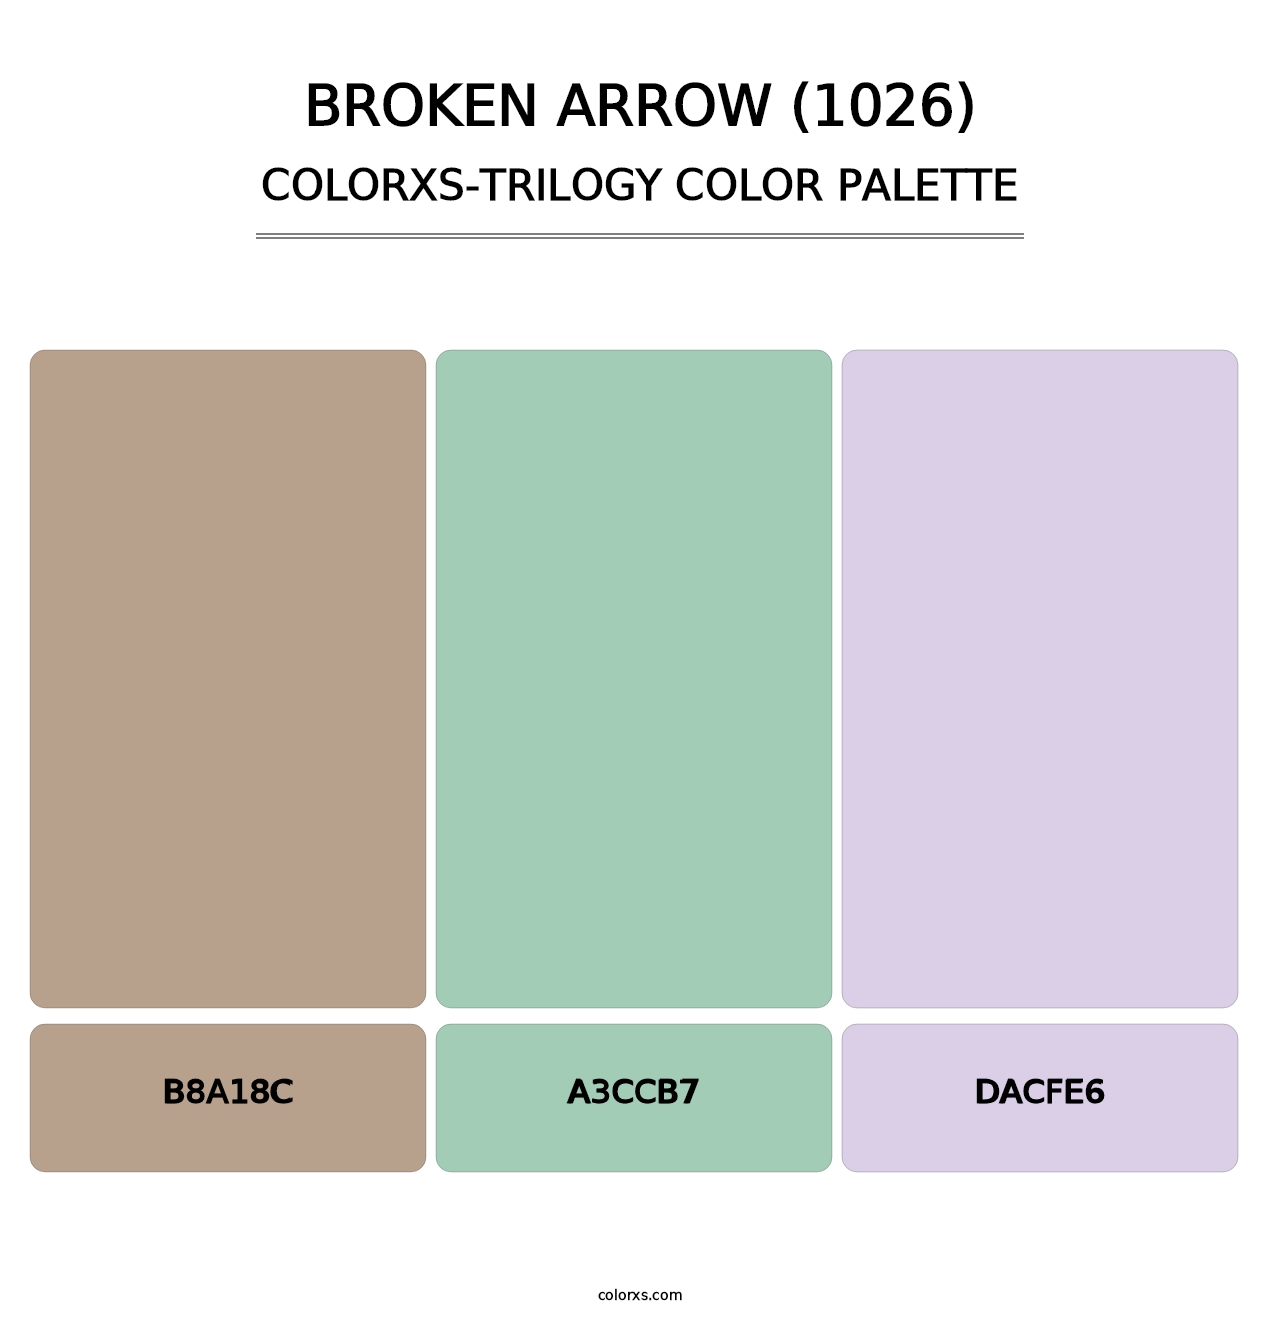 Broken Arrow (1026) - Colorxs Trilogy Palette